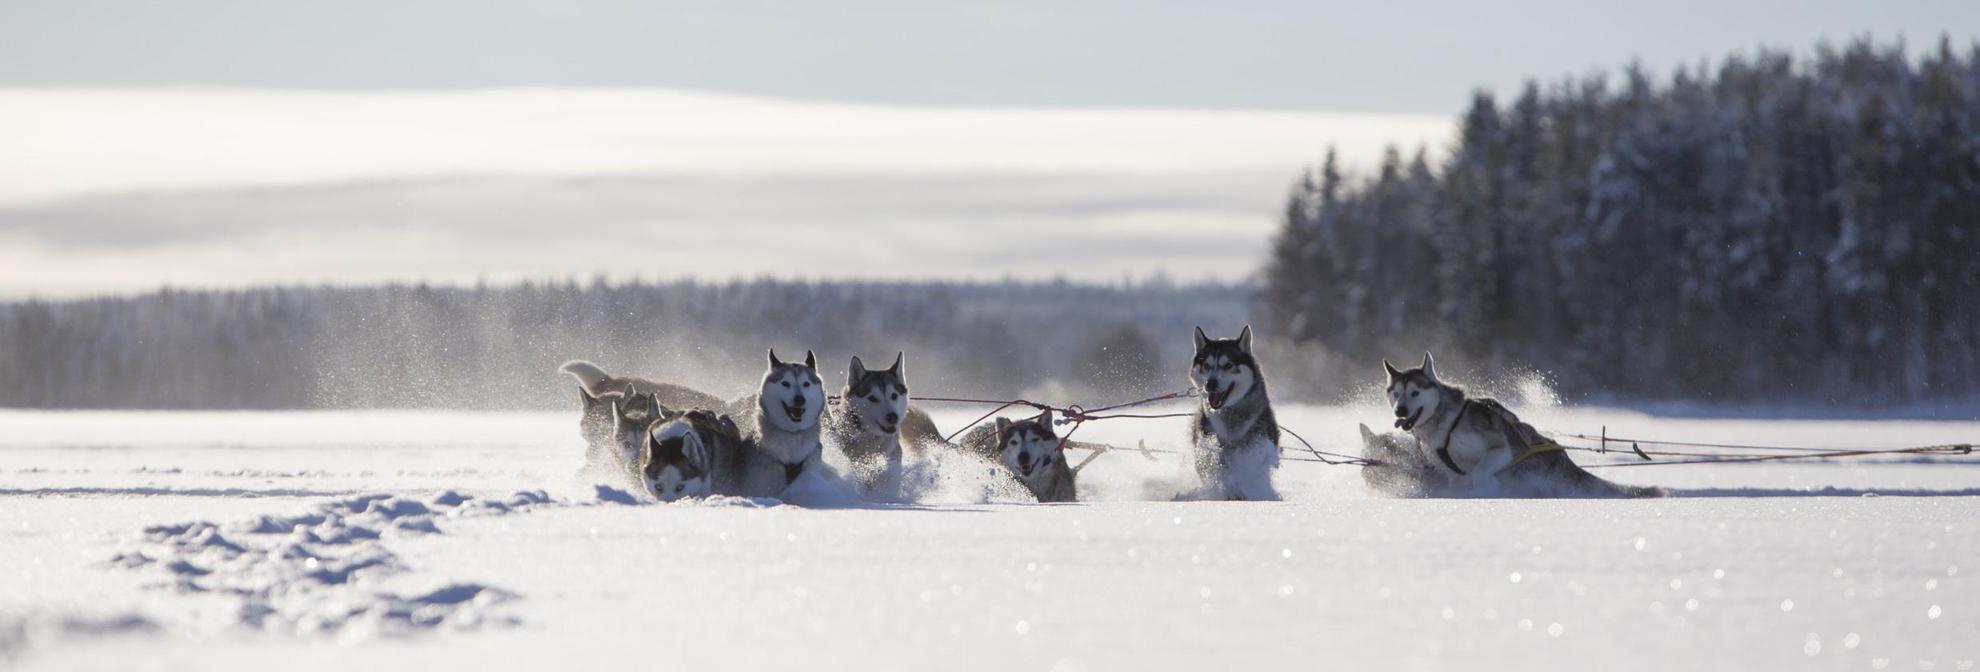 Un groupe de Huskies est attelé à un traîneau et court dans la neige profonde de la Laponie suédoise.